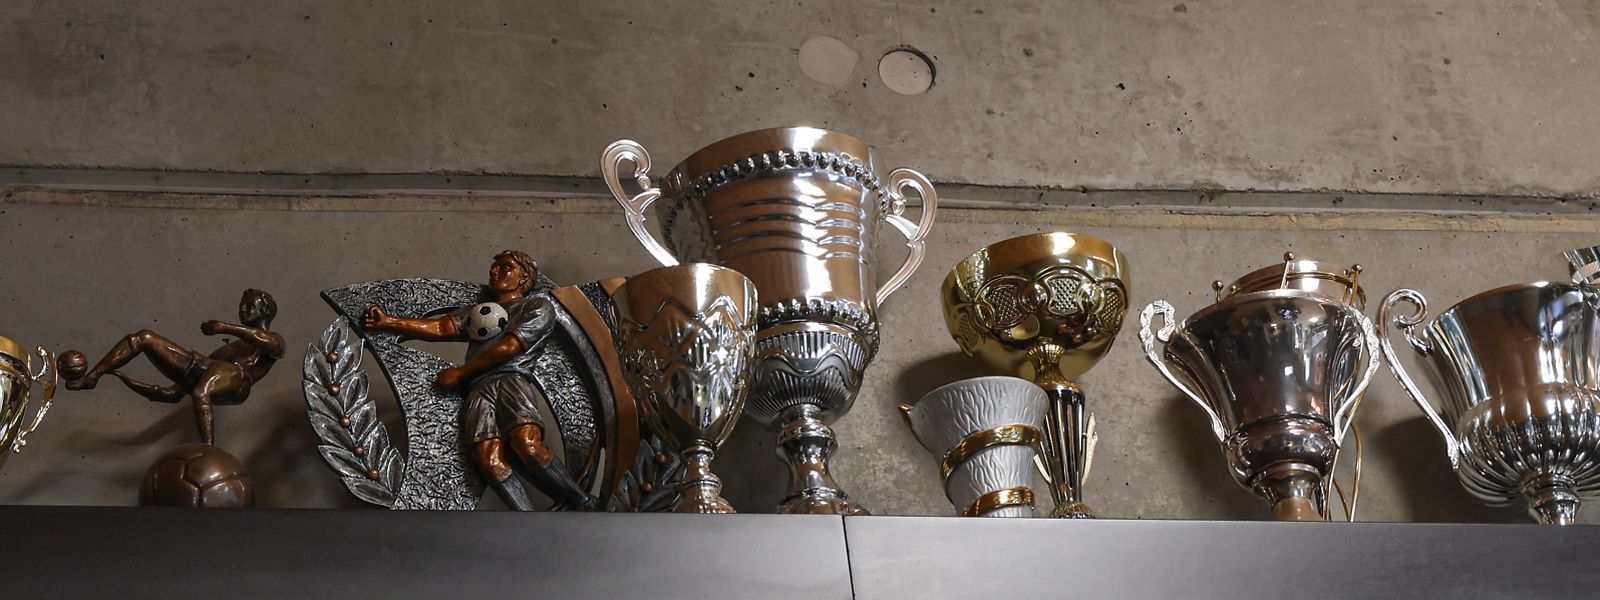 In 100 Jahren Vereinsleben haben sich viele Pokale und Trophäen angesammelt.